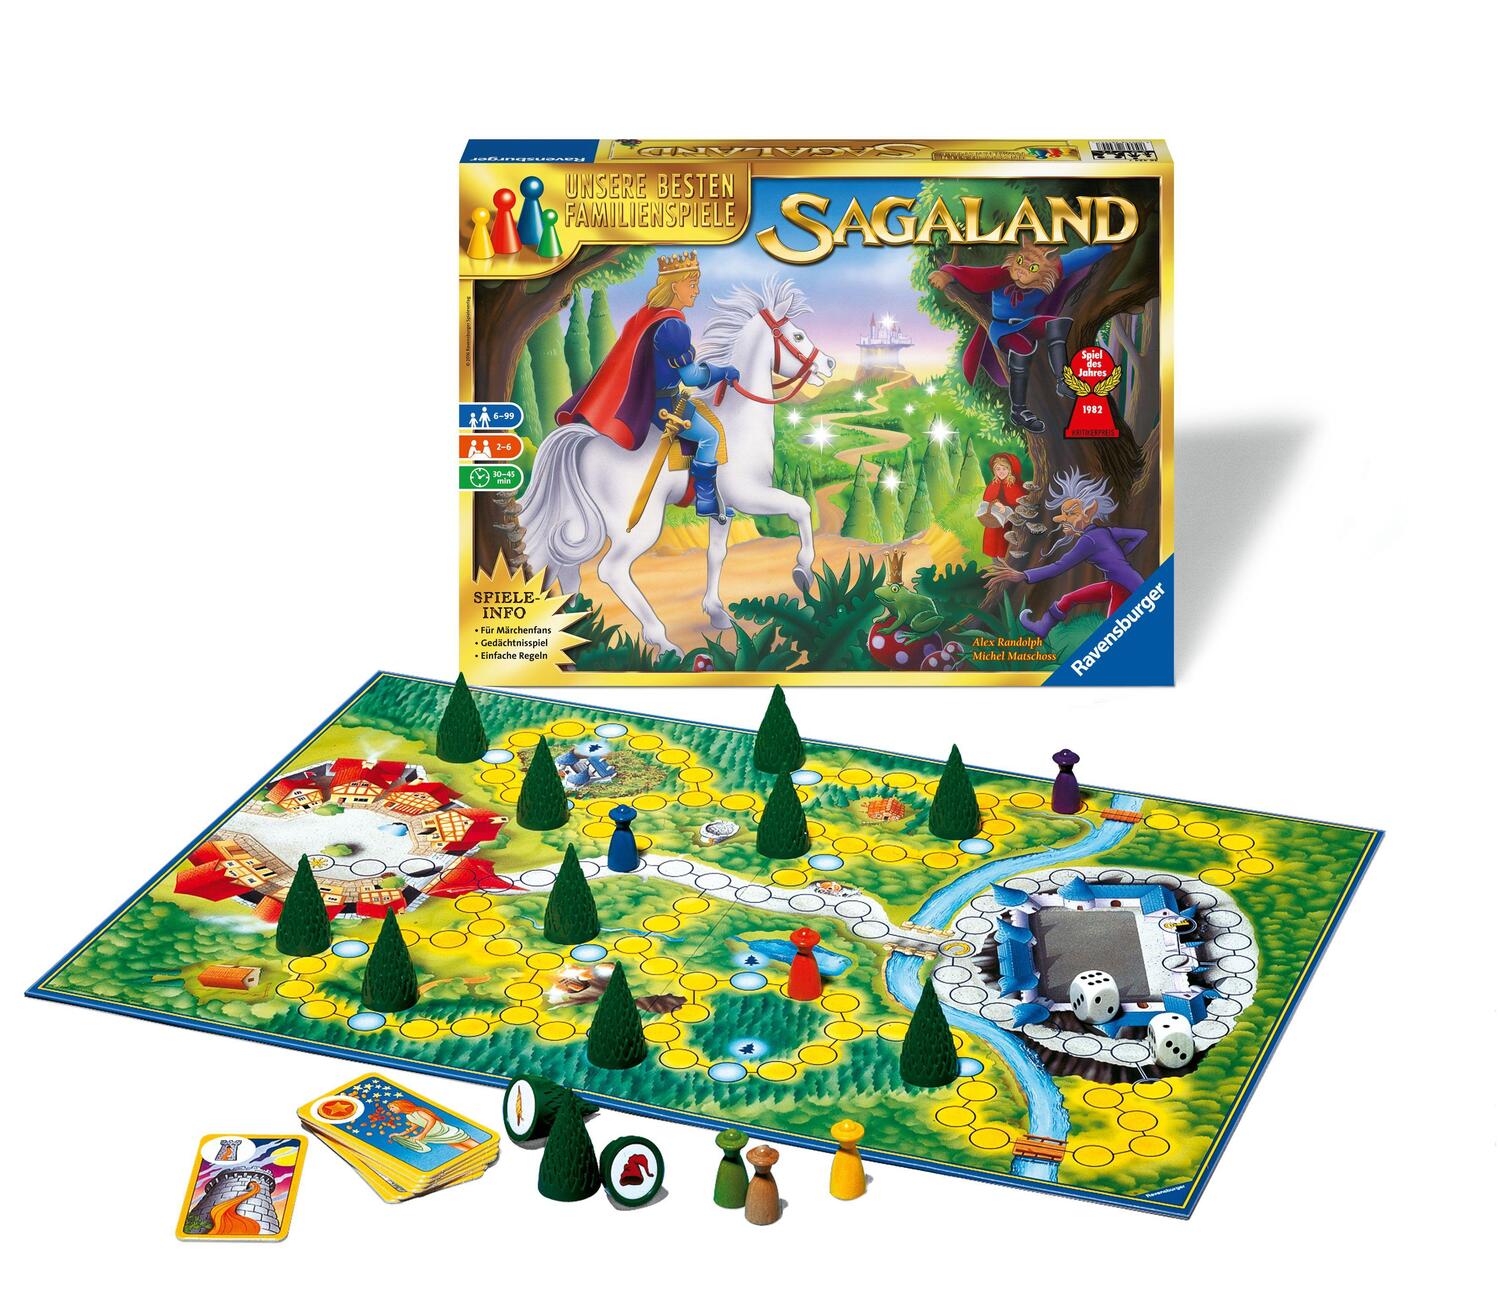 Bild: 4005556264247 | Sagaland | Ein zauberhaftes Familienspiel durch die Märchenwelt | 2013